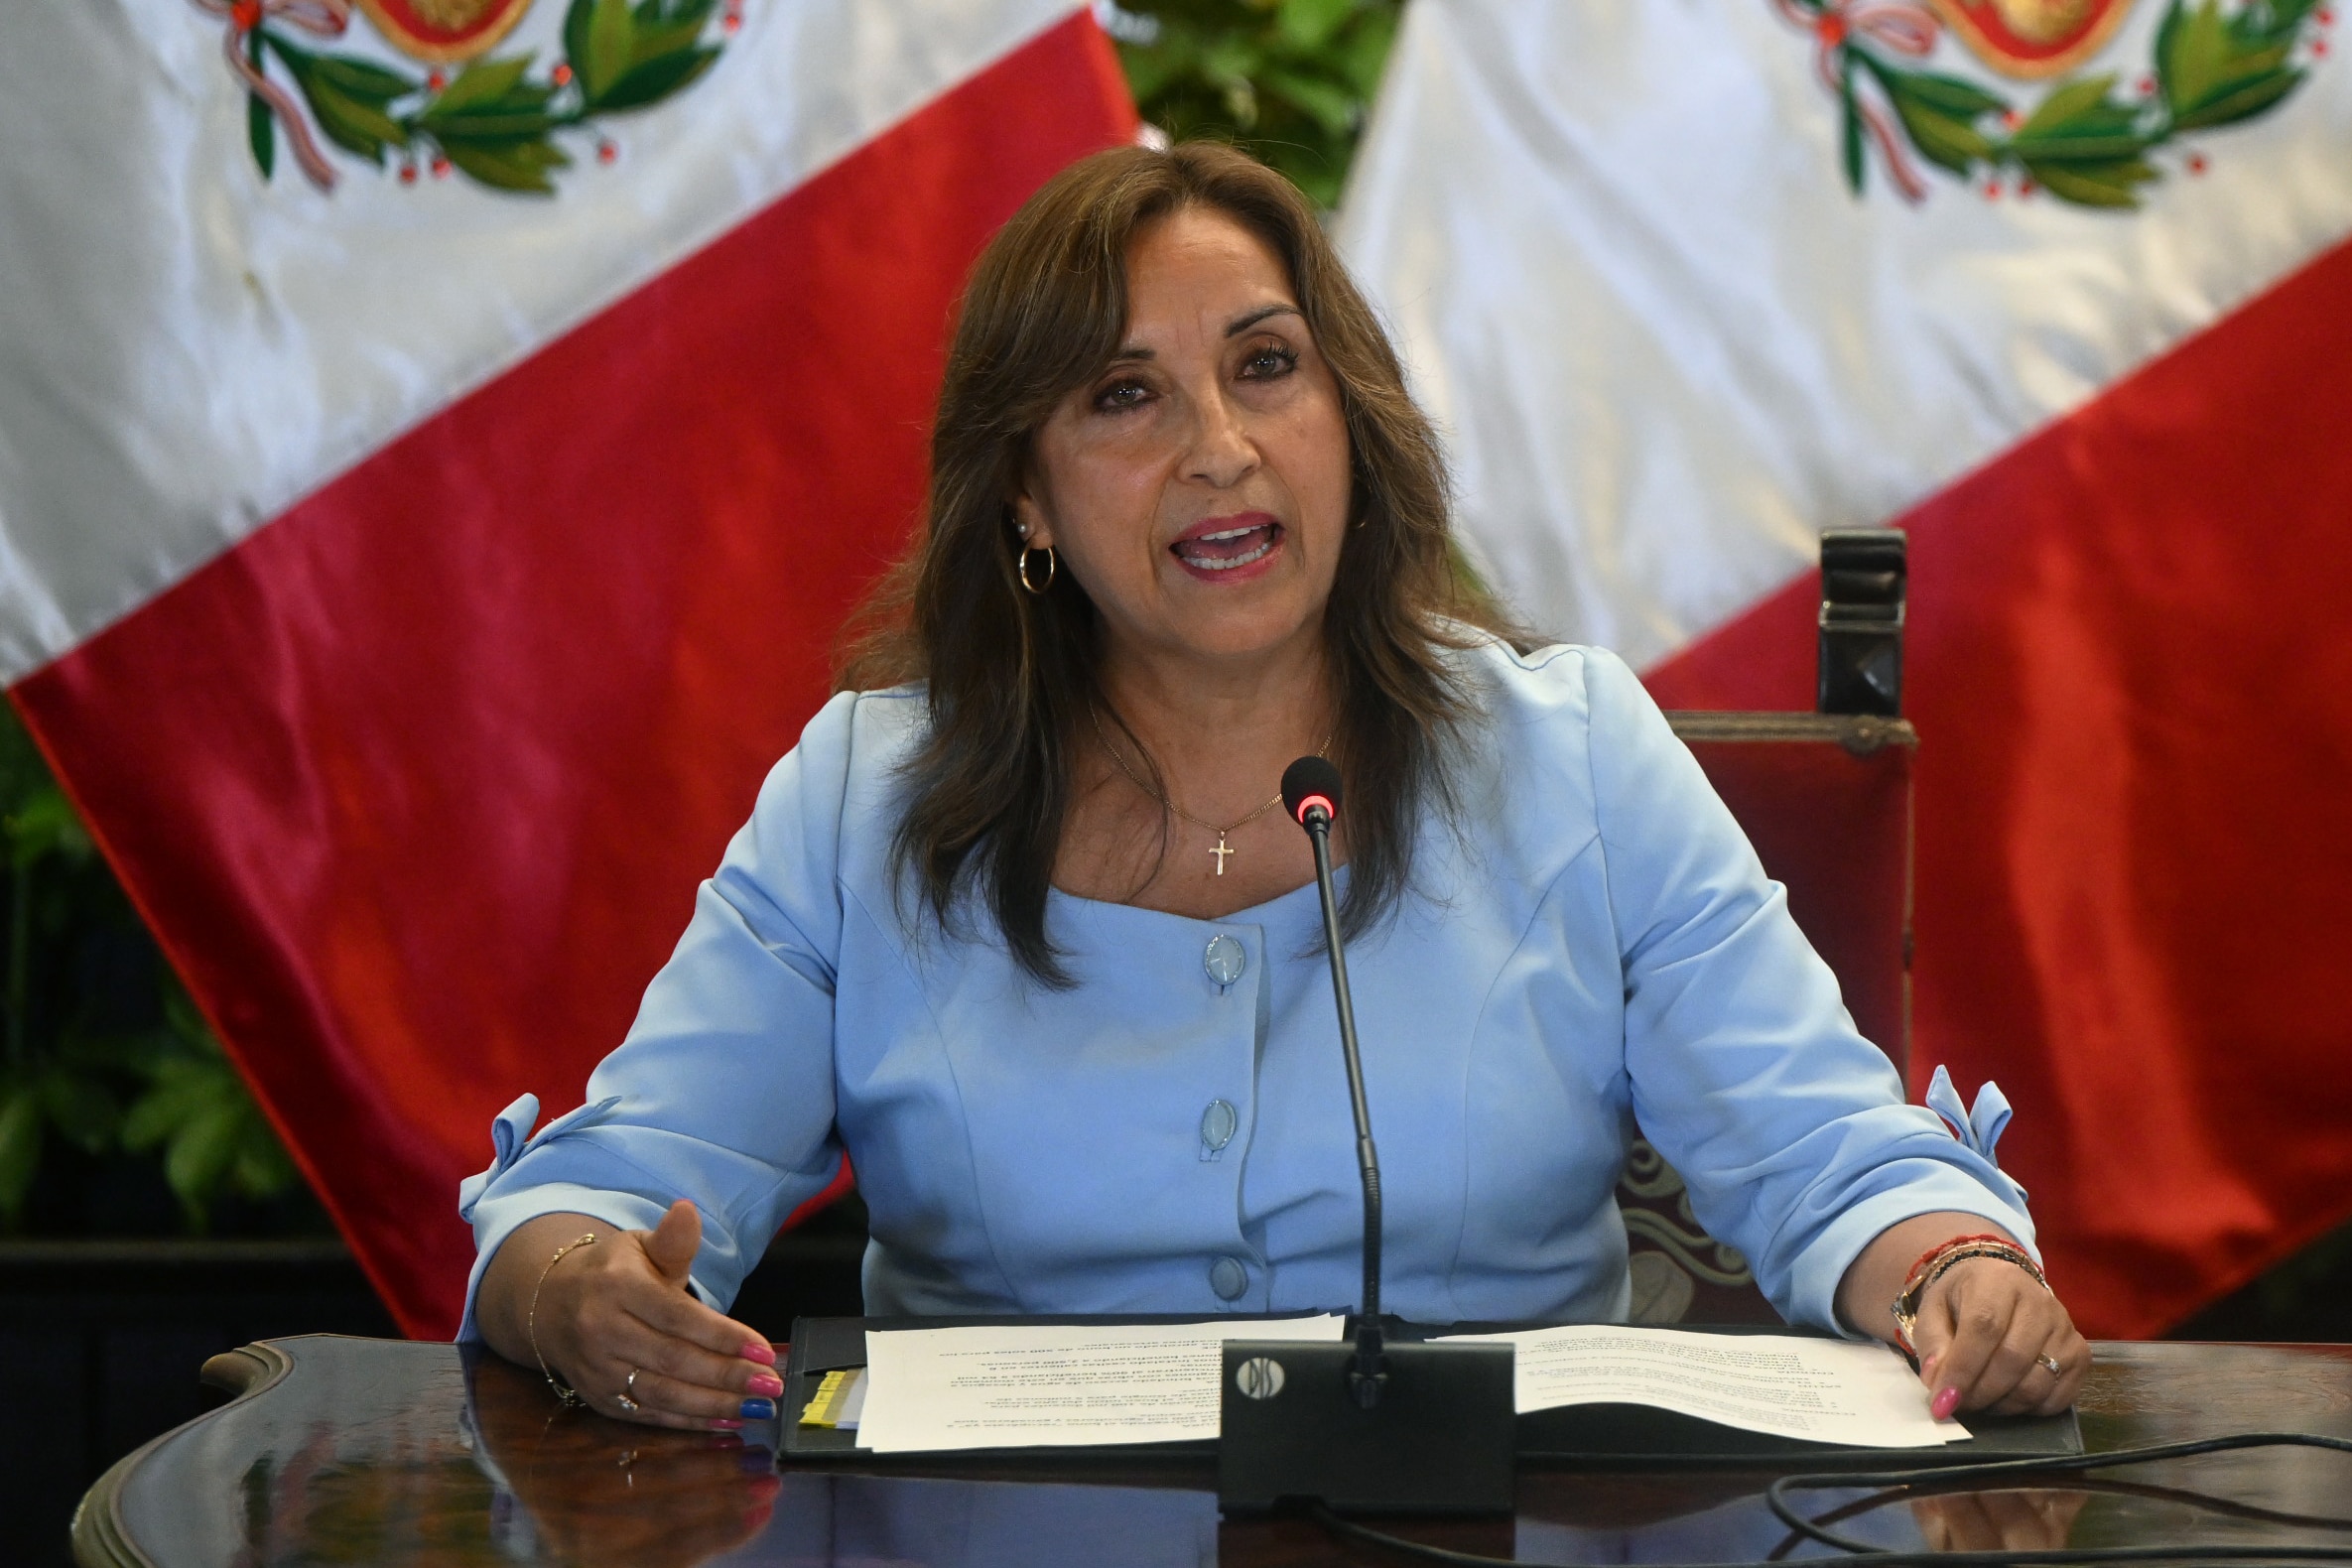 Fiscalía interroga a presidenta de Perú por muertes en protestas